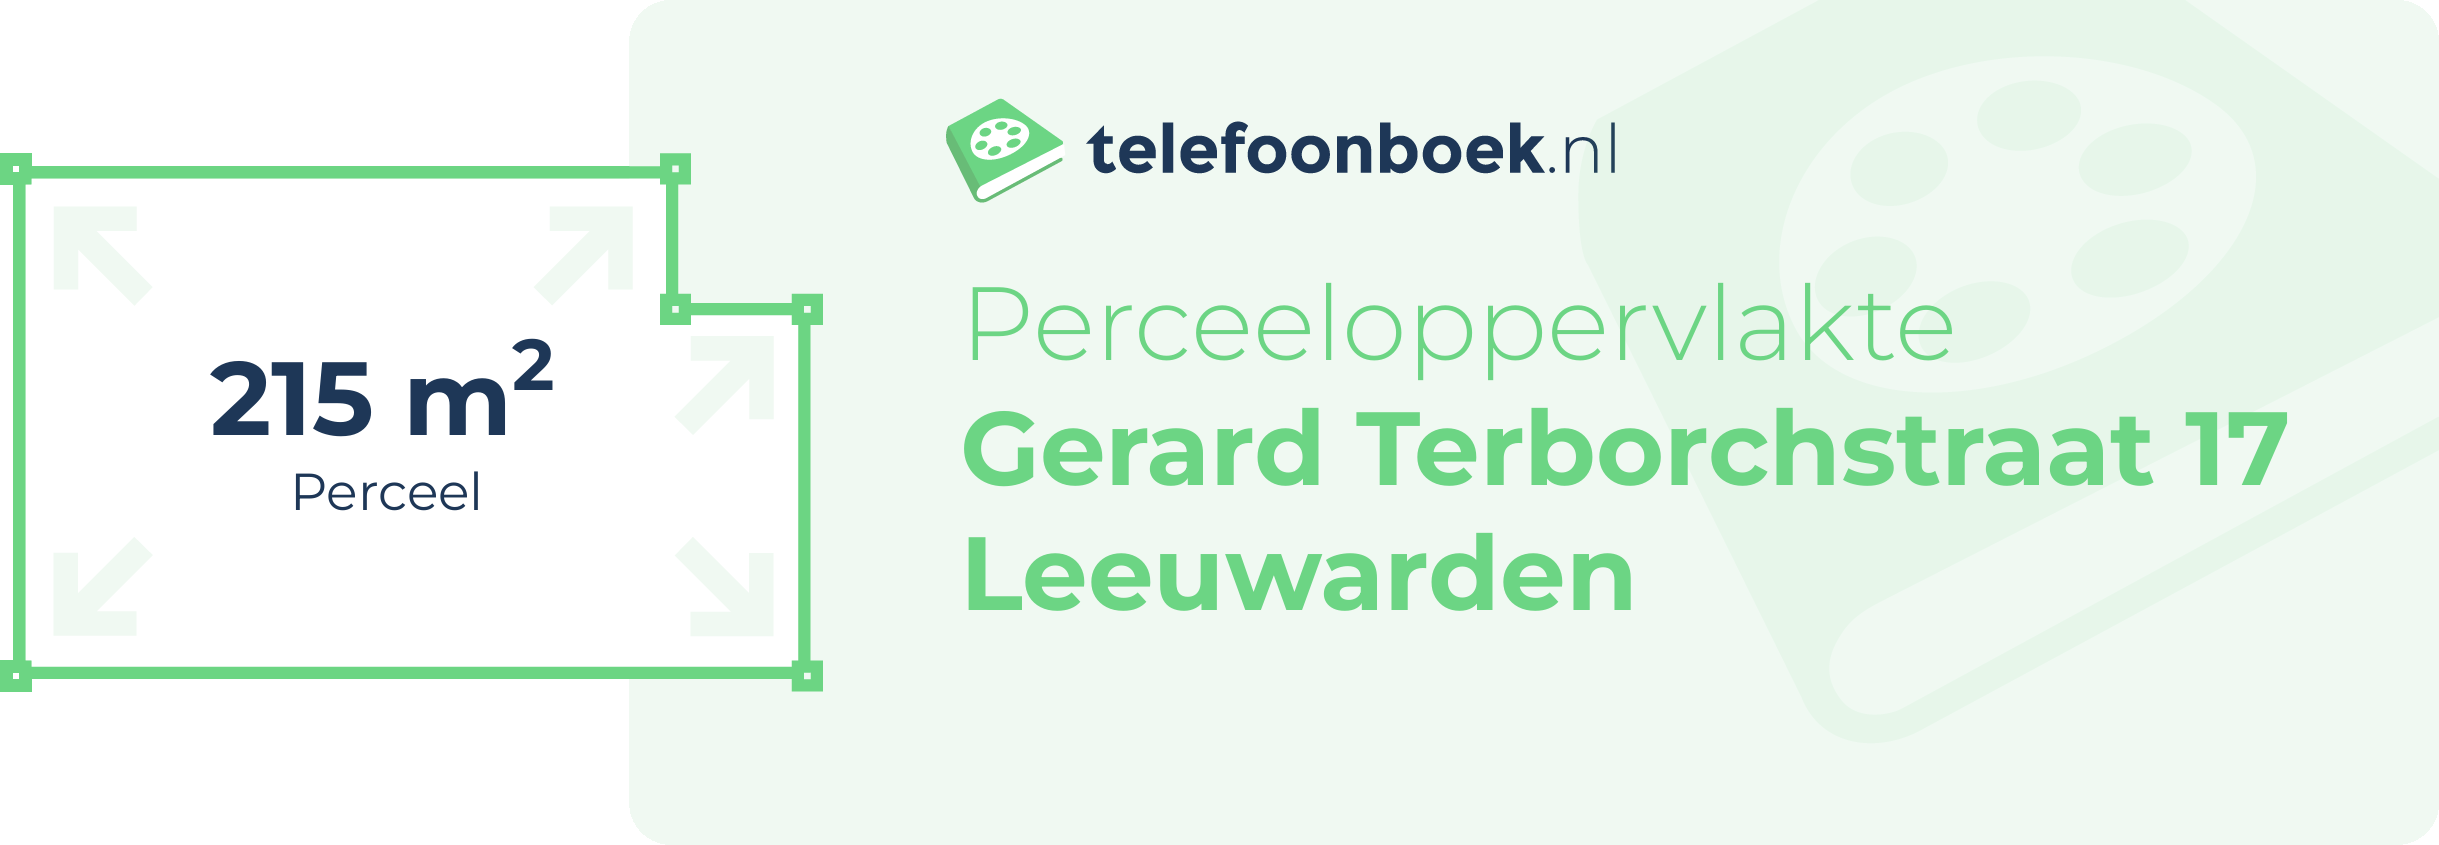 Perceeloppervlakte Gerard Terborchstraat 17 Leeuwarden